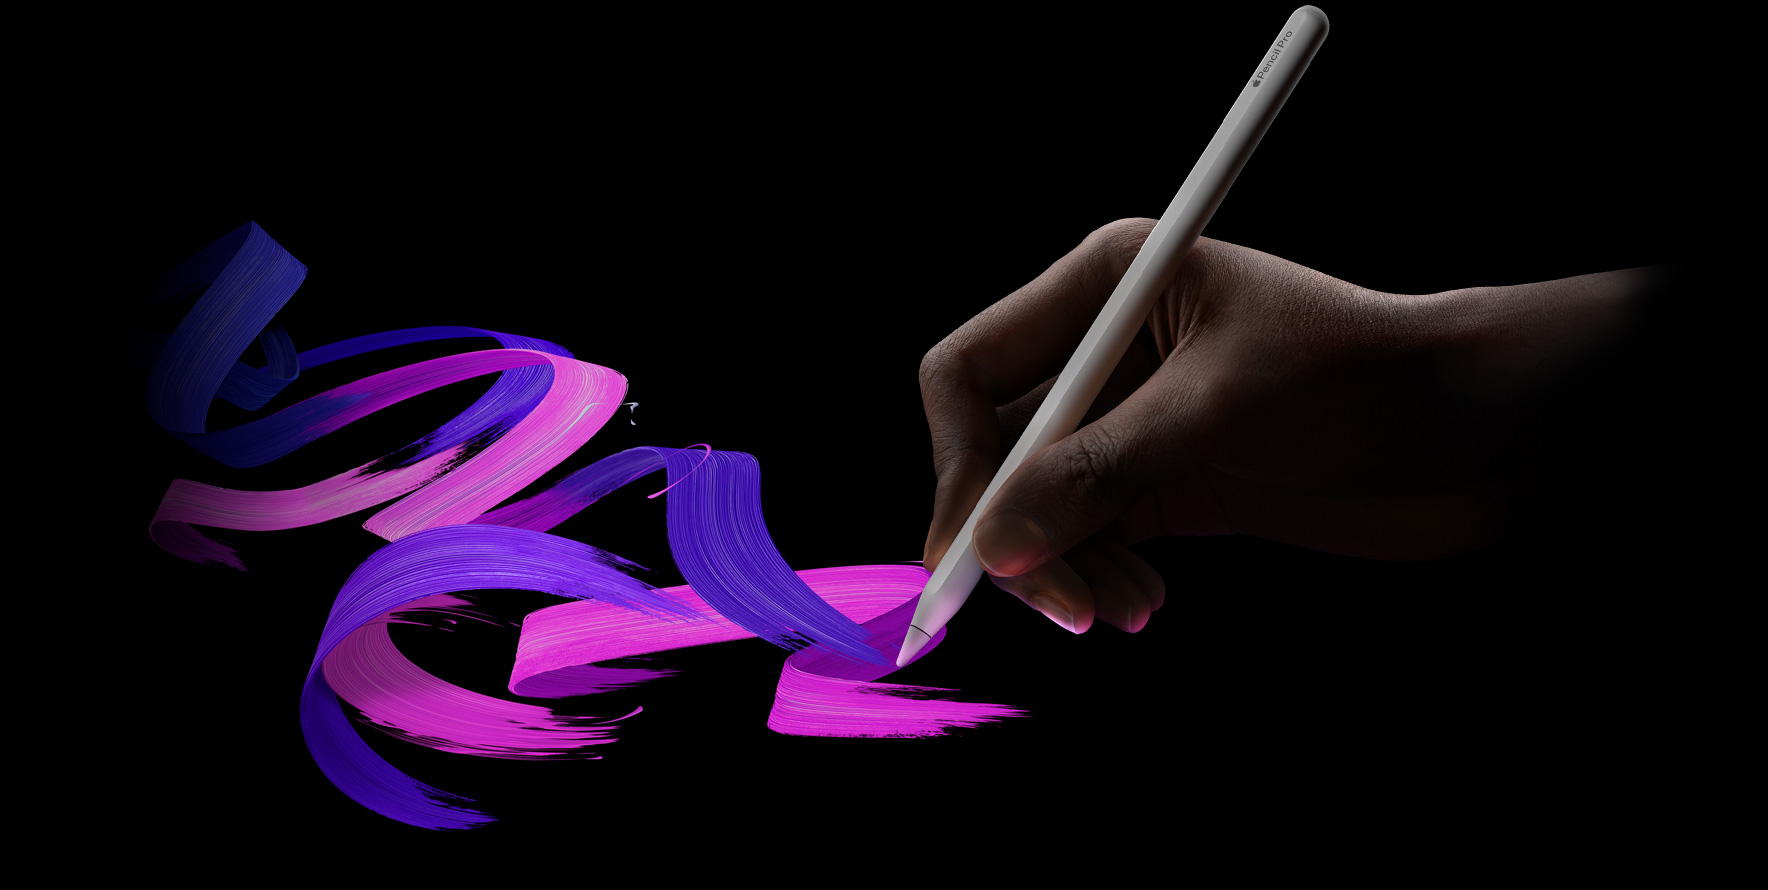 ユーザーがApple Pencil Proを持ち、色あざやかなブラシの線を描いている。